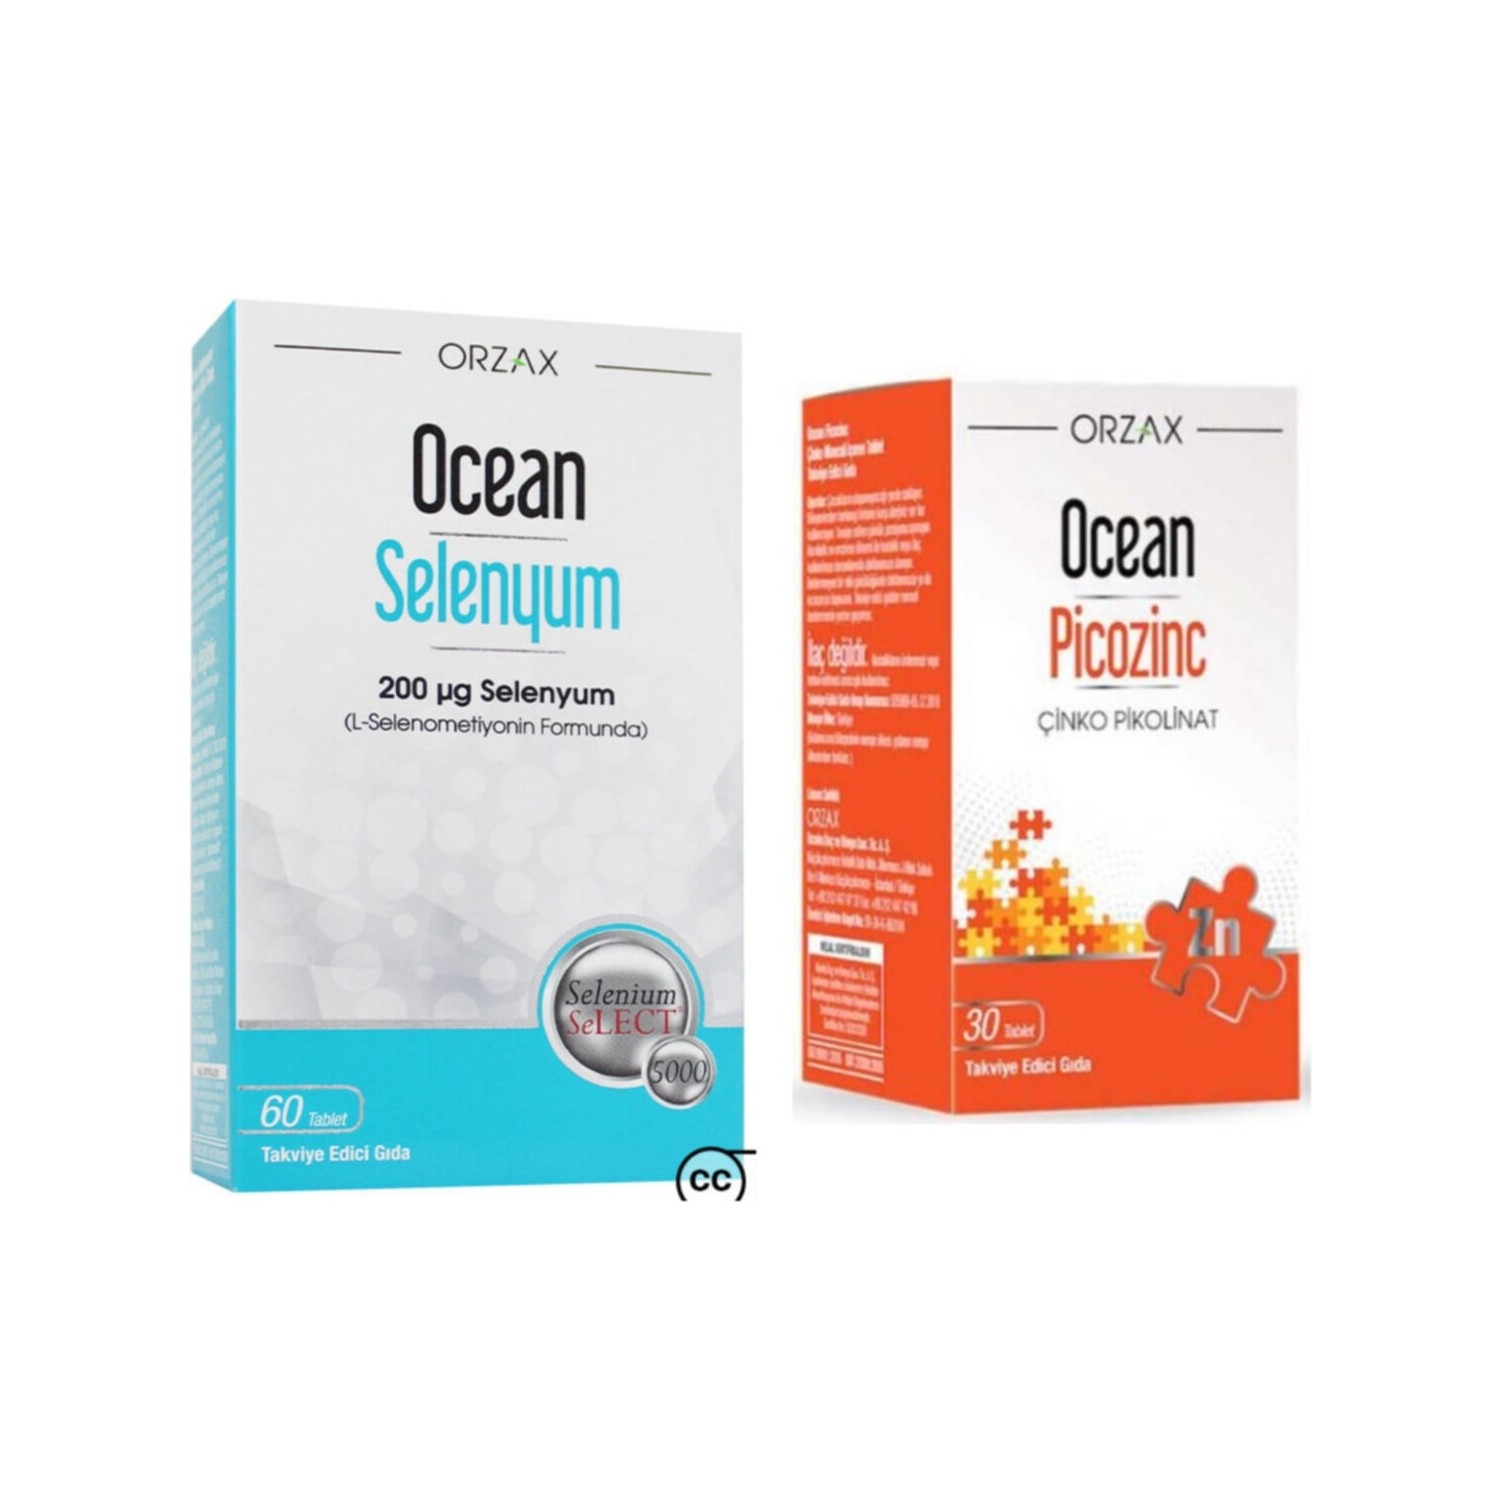 цена Селен Ocean 200 мкг, 60 таблеток + Пищевая добавка Ocean Picozinc Cinko Picolinate, 30 капсул